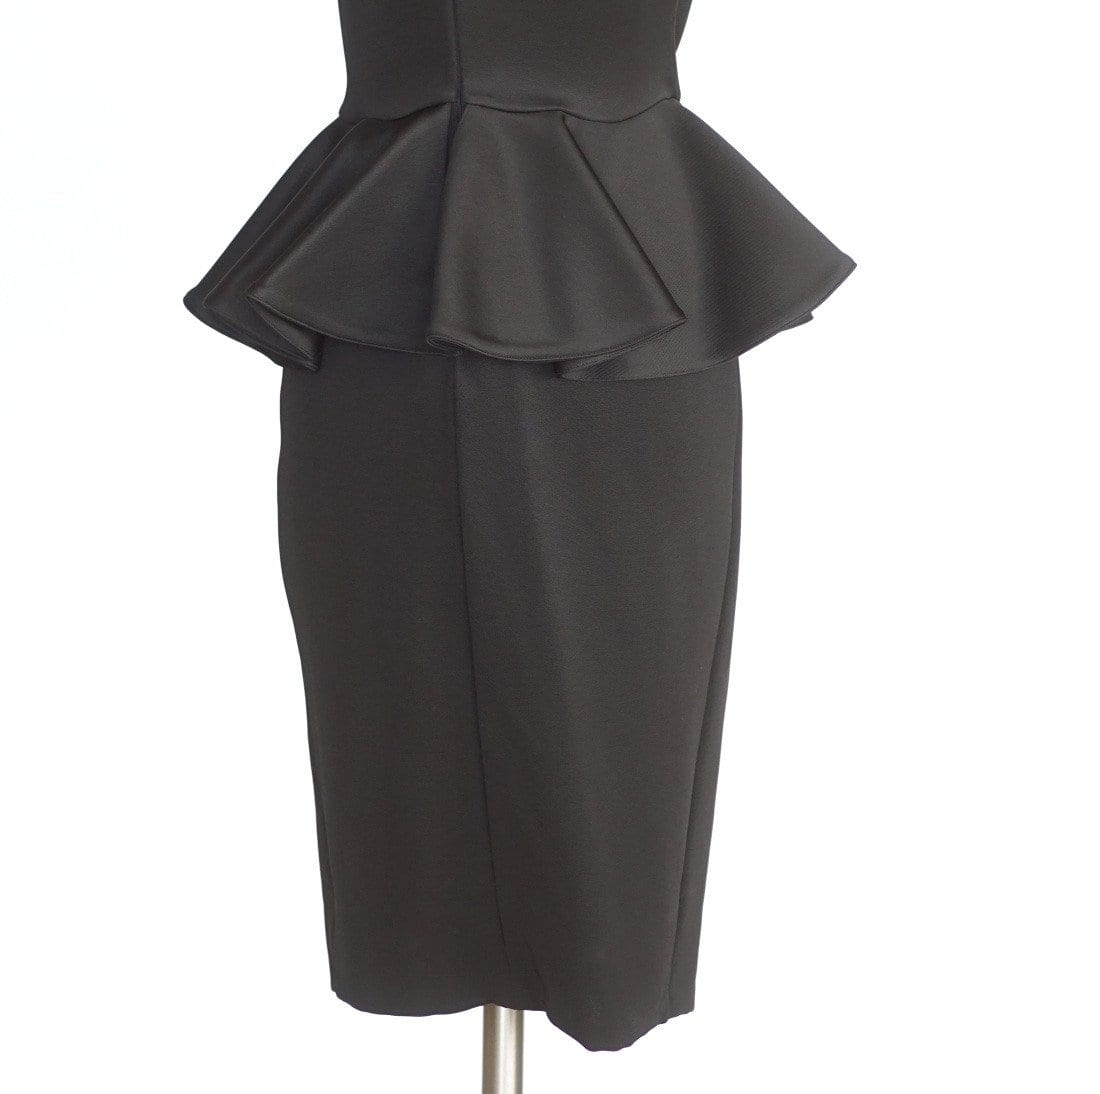 Givenchy Dress Black Ruffle Peplum Beautiful 40 / 6 - mightychic